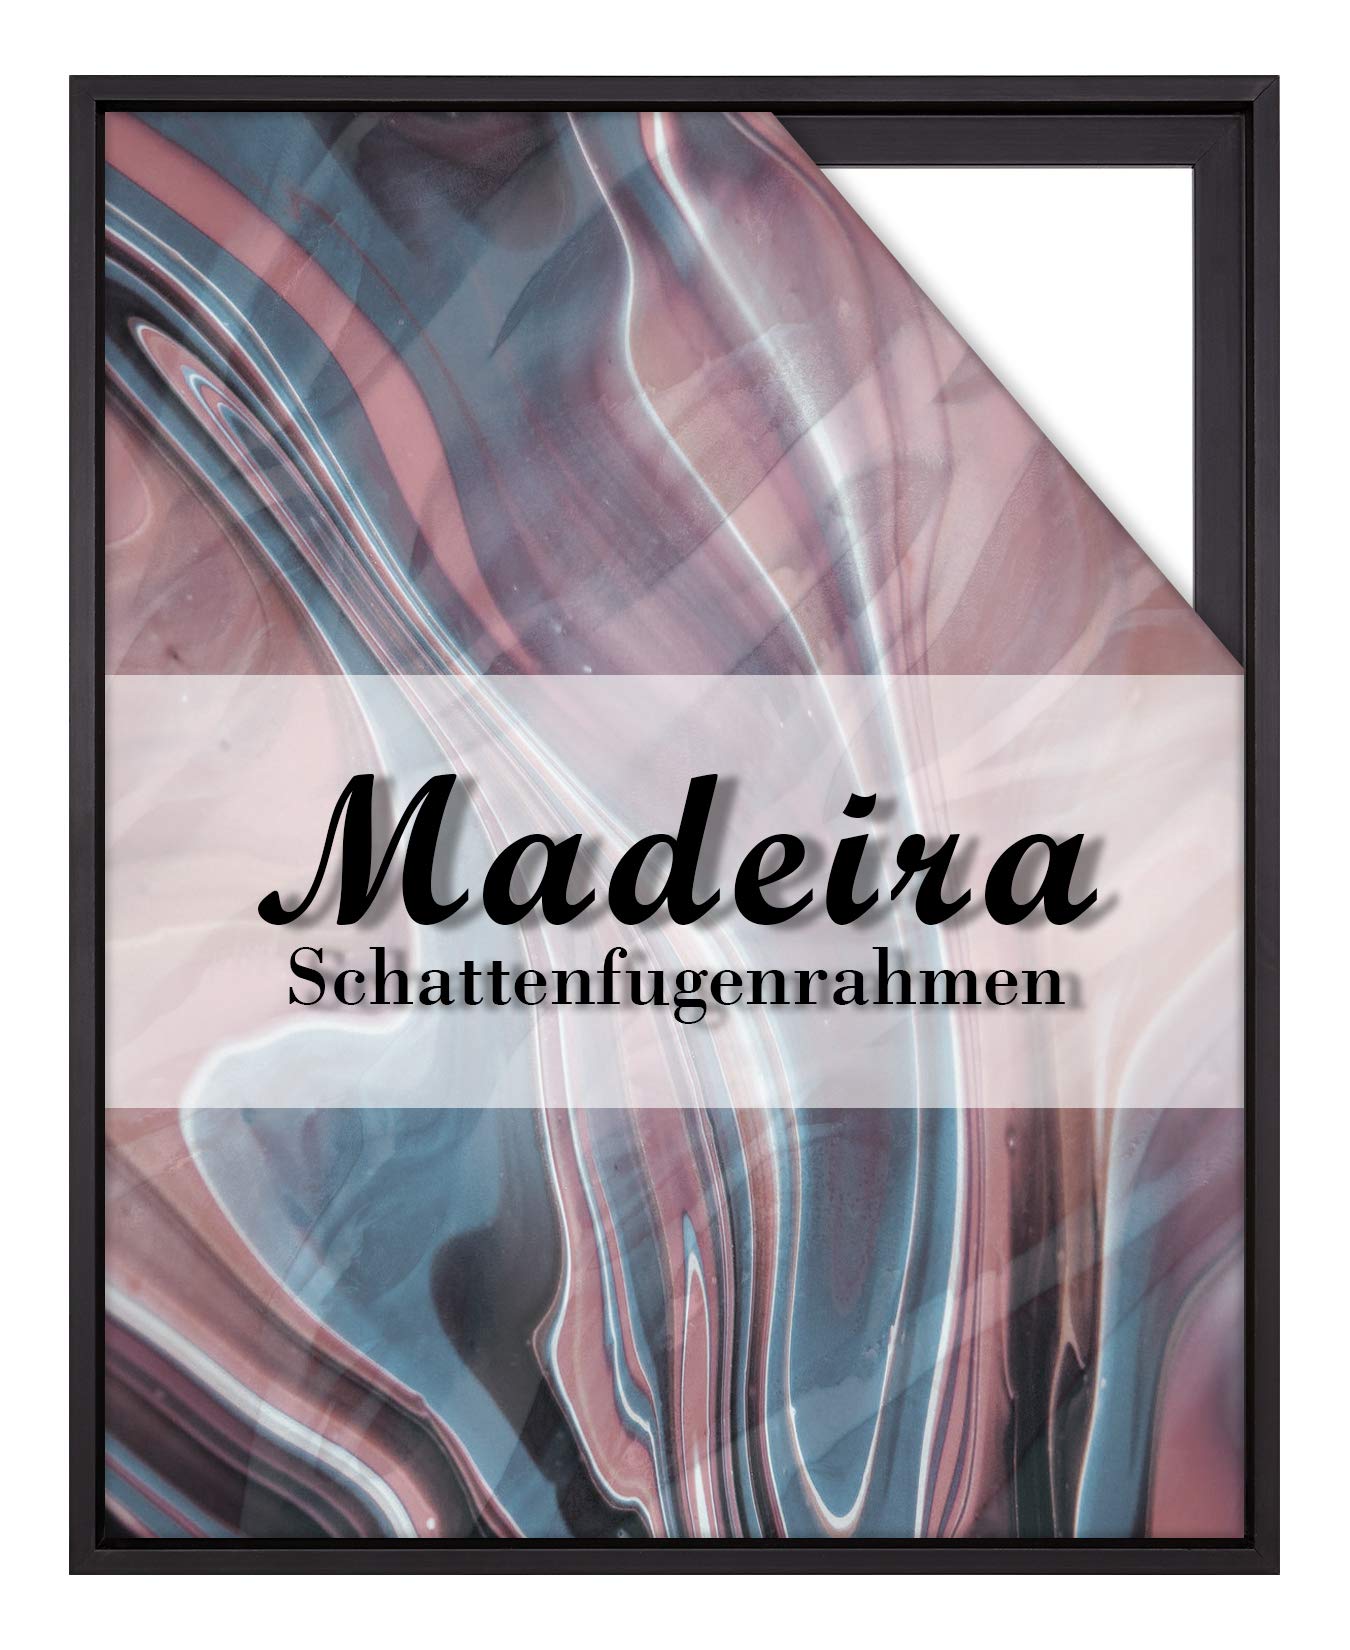 BIRAPA Madeira Schattenfugenrahmen für Leinwand 50x100 cm in Schwarz, Holzrahmen, Rahmen für Leinwände, Leerrahmen für Leinwand, Schattenfugenrahmen für Keilrahmen